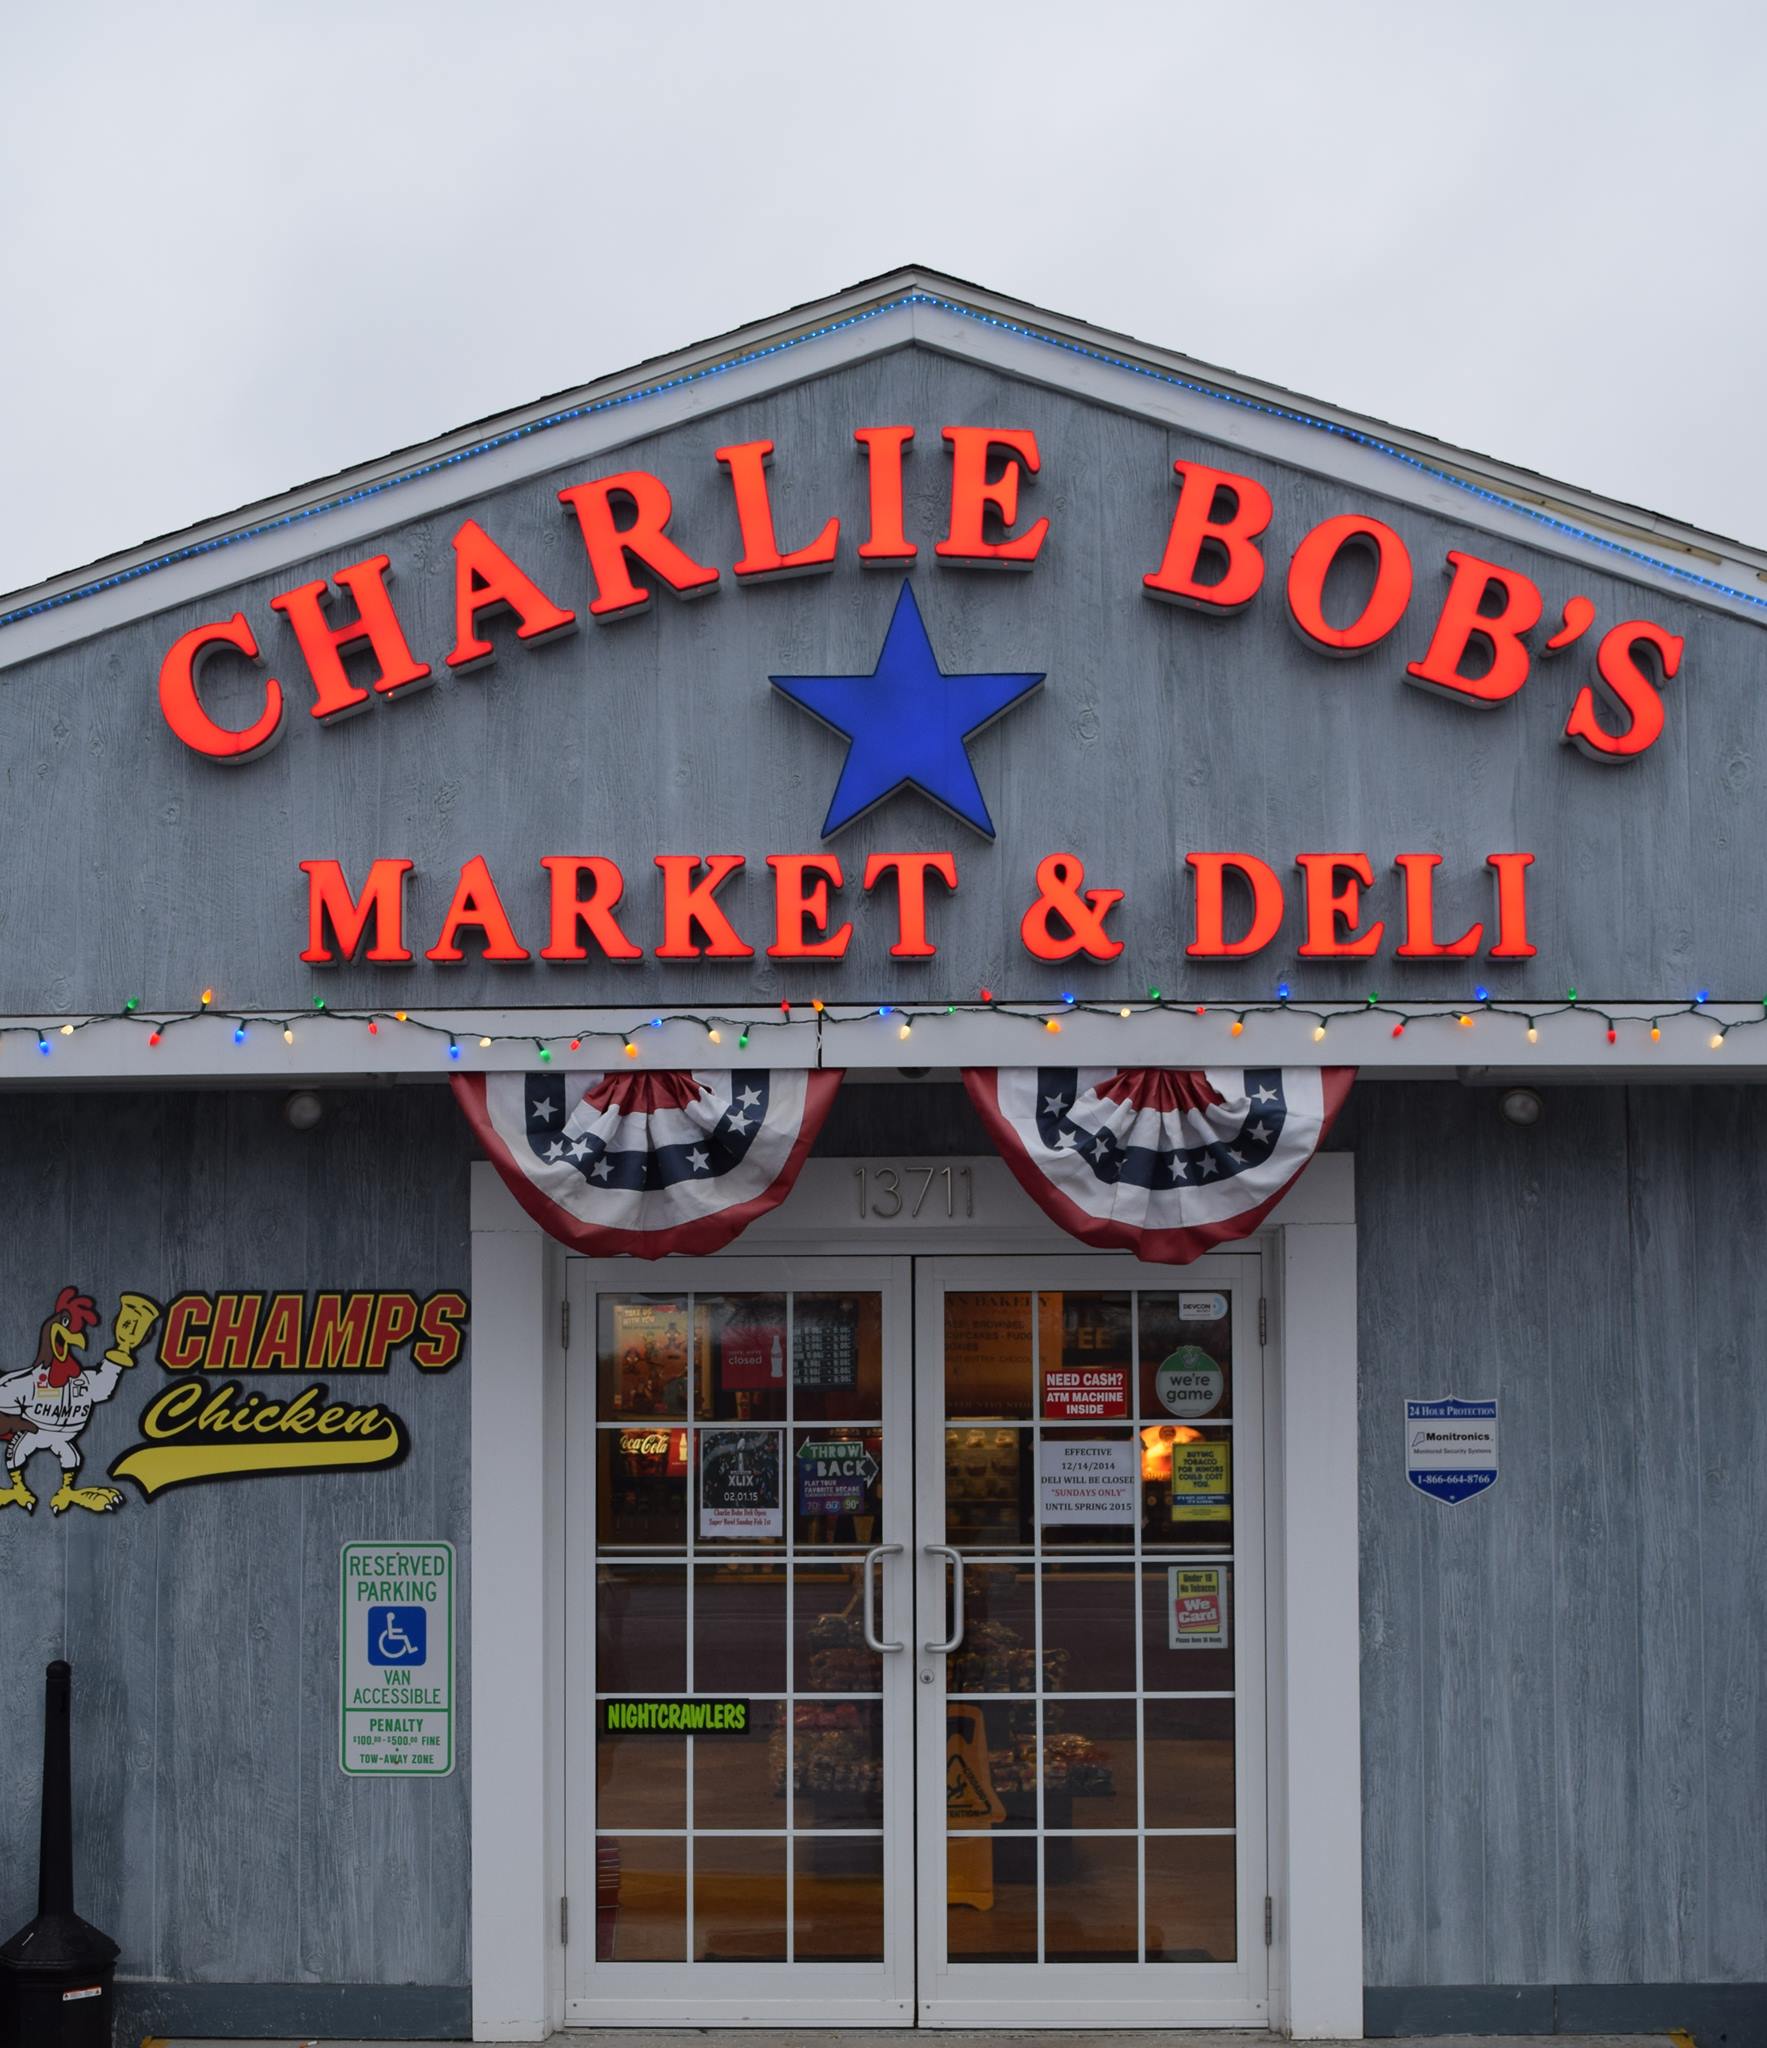 Charlie Bob's Market And Deli